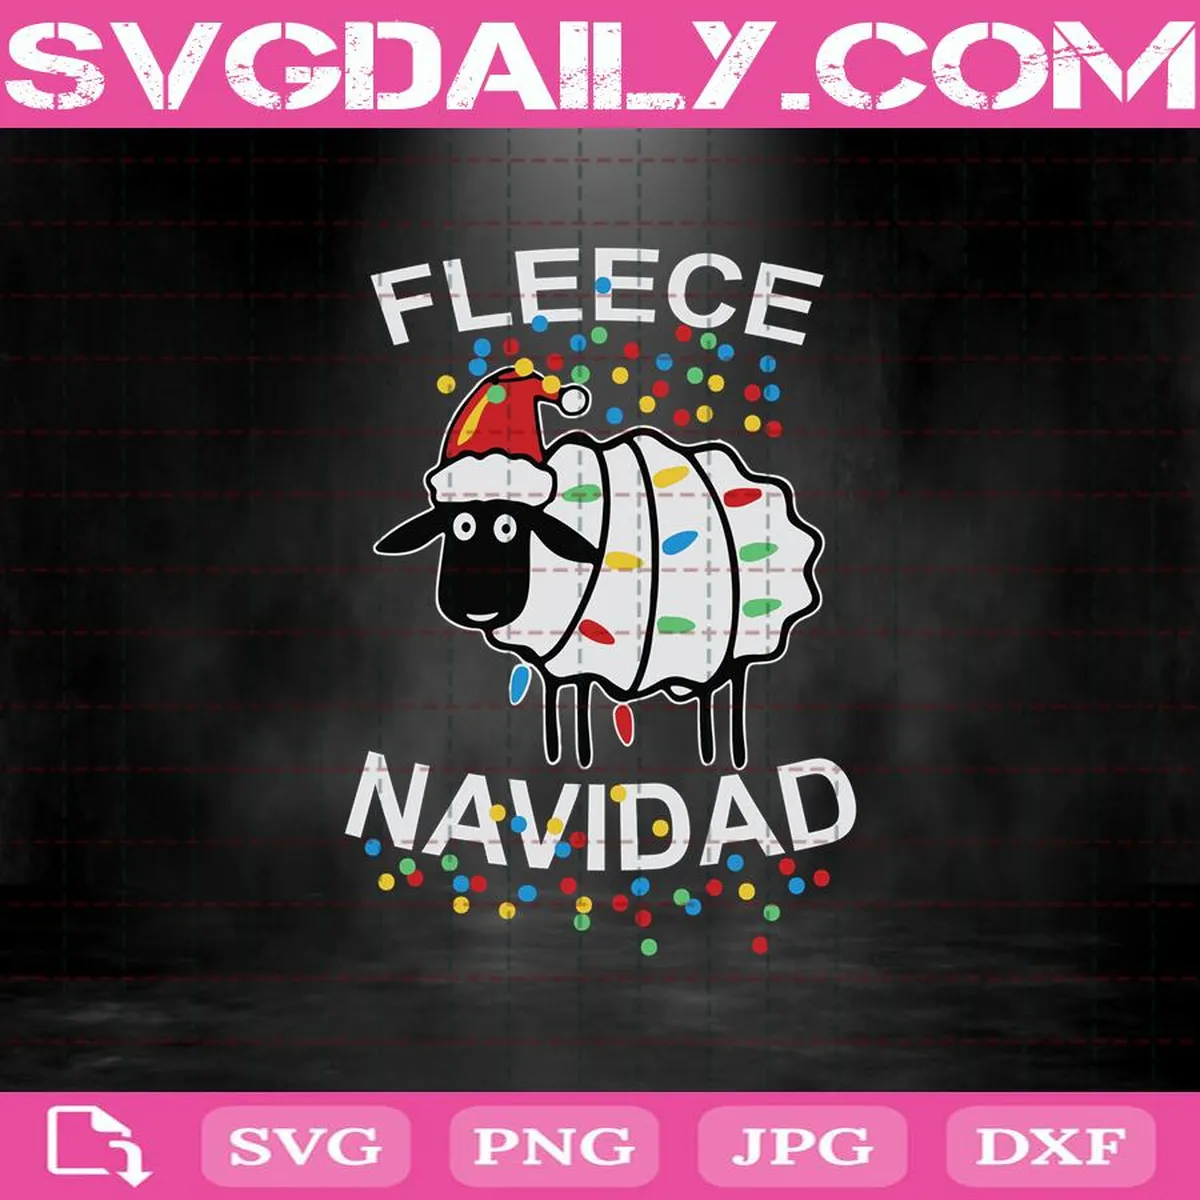 Fleece Navidad Svg, Fleece Navidad Christmas Sheep Cuttable Svg, December Svg, Christmas Svg, Funny Holiday Svg